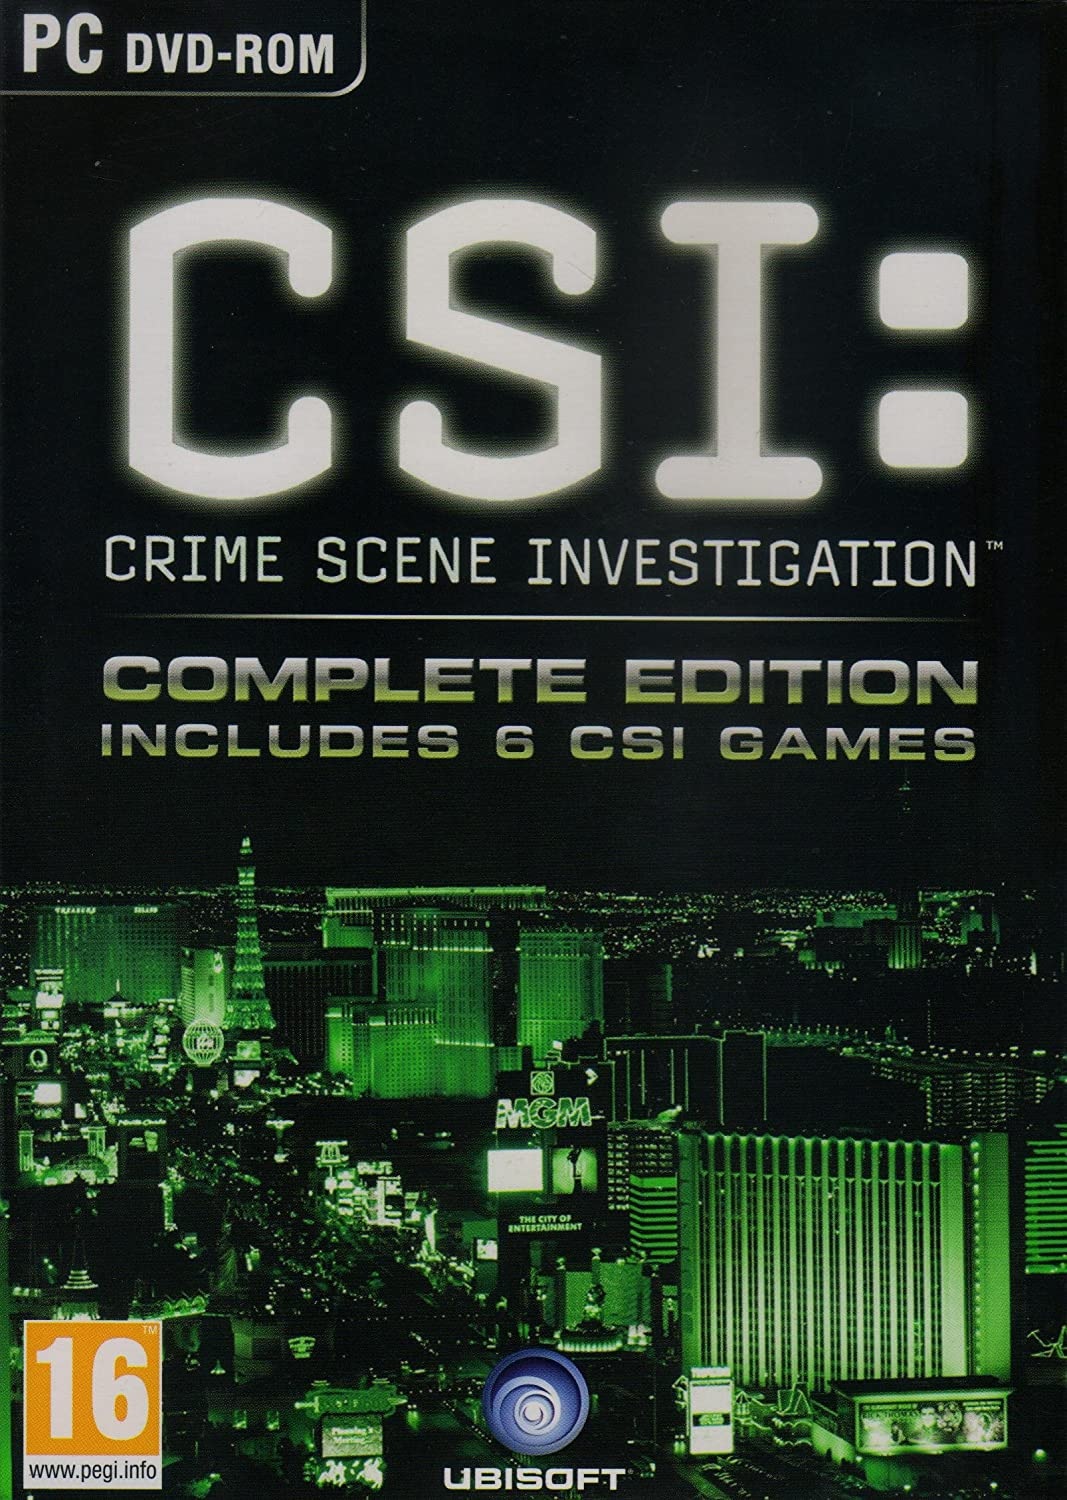 Crime Scene Investigation Complete Edition includes 6 CSI Games PC